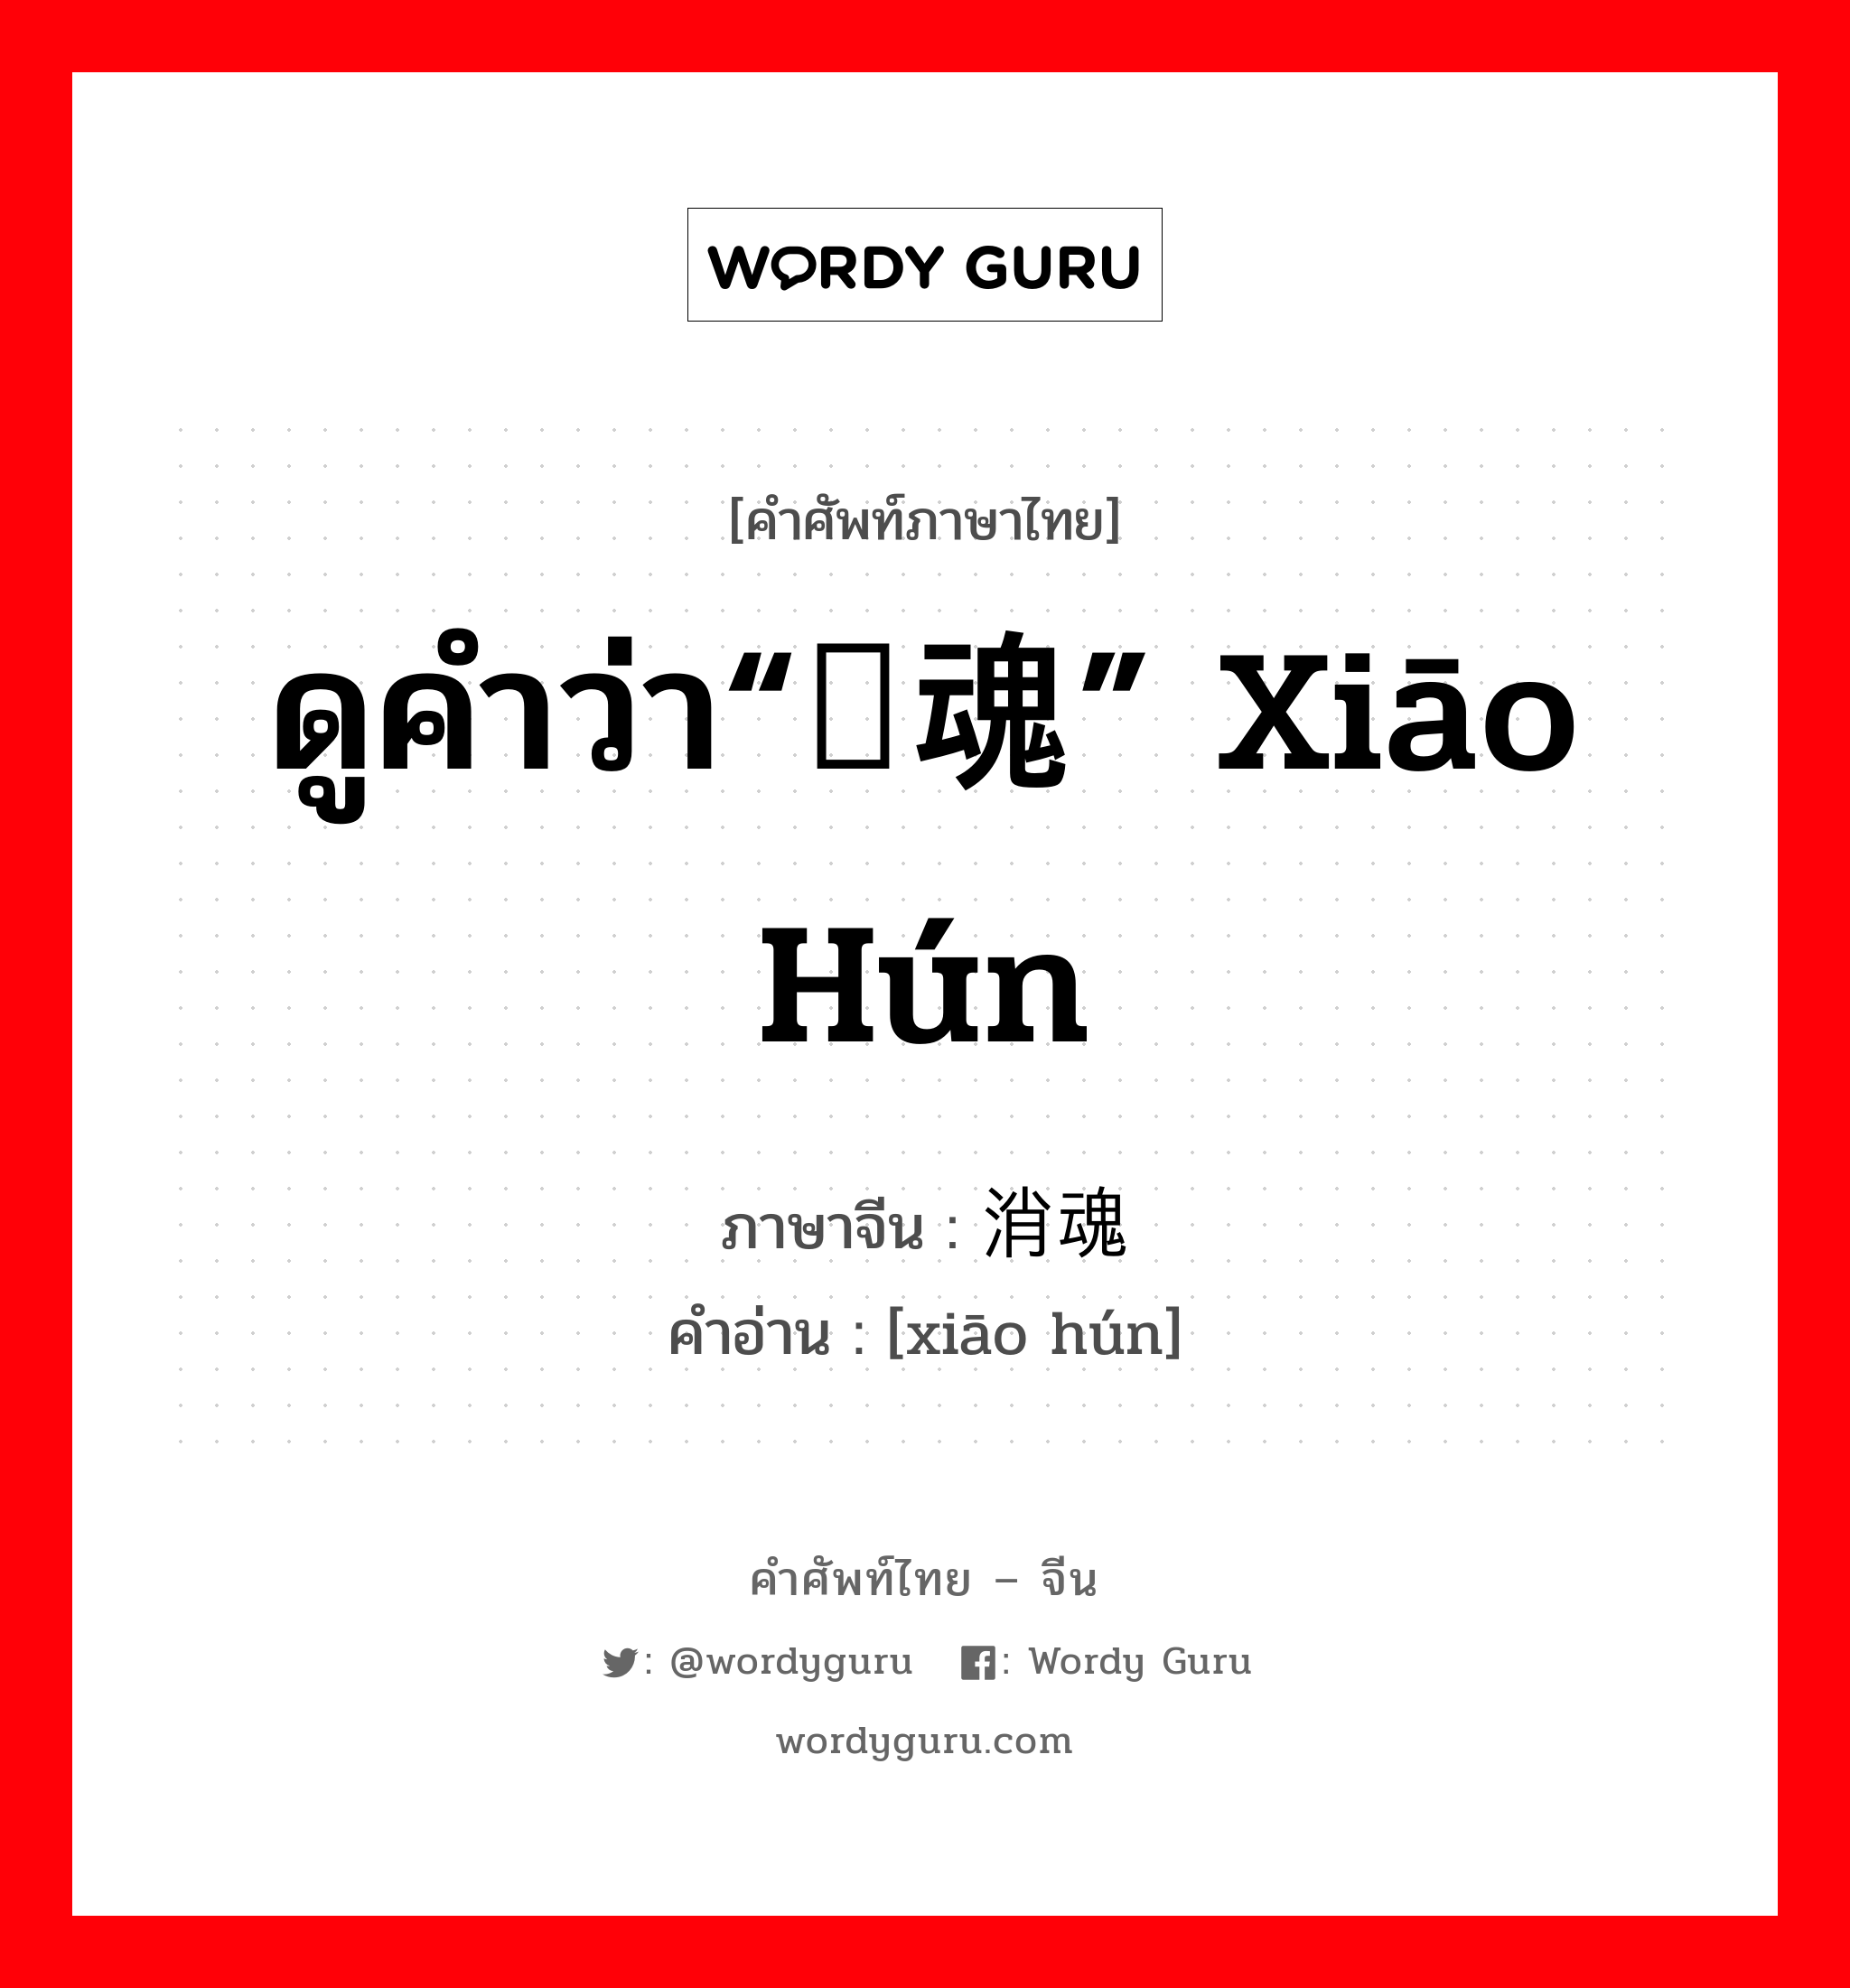 ดูคำว่า“销魂” xiāo hún ภาษาจีนคืออะไร, คำศัพท์ภาษาไทย - จีน ดูคำว่า“销魂” xiāo hún ภาษาจีน 消魂 คำอ่าน [xiāo hún]